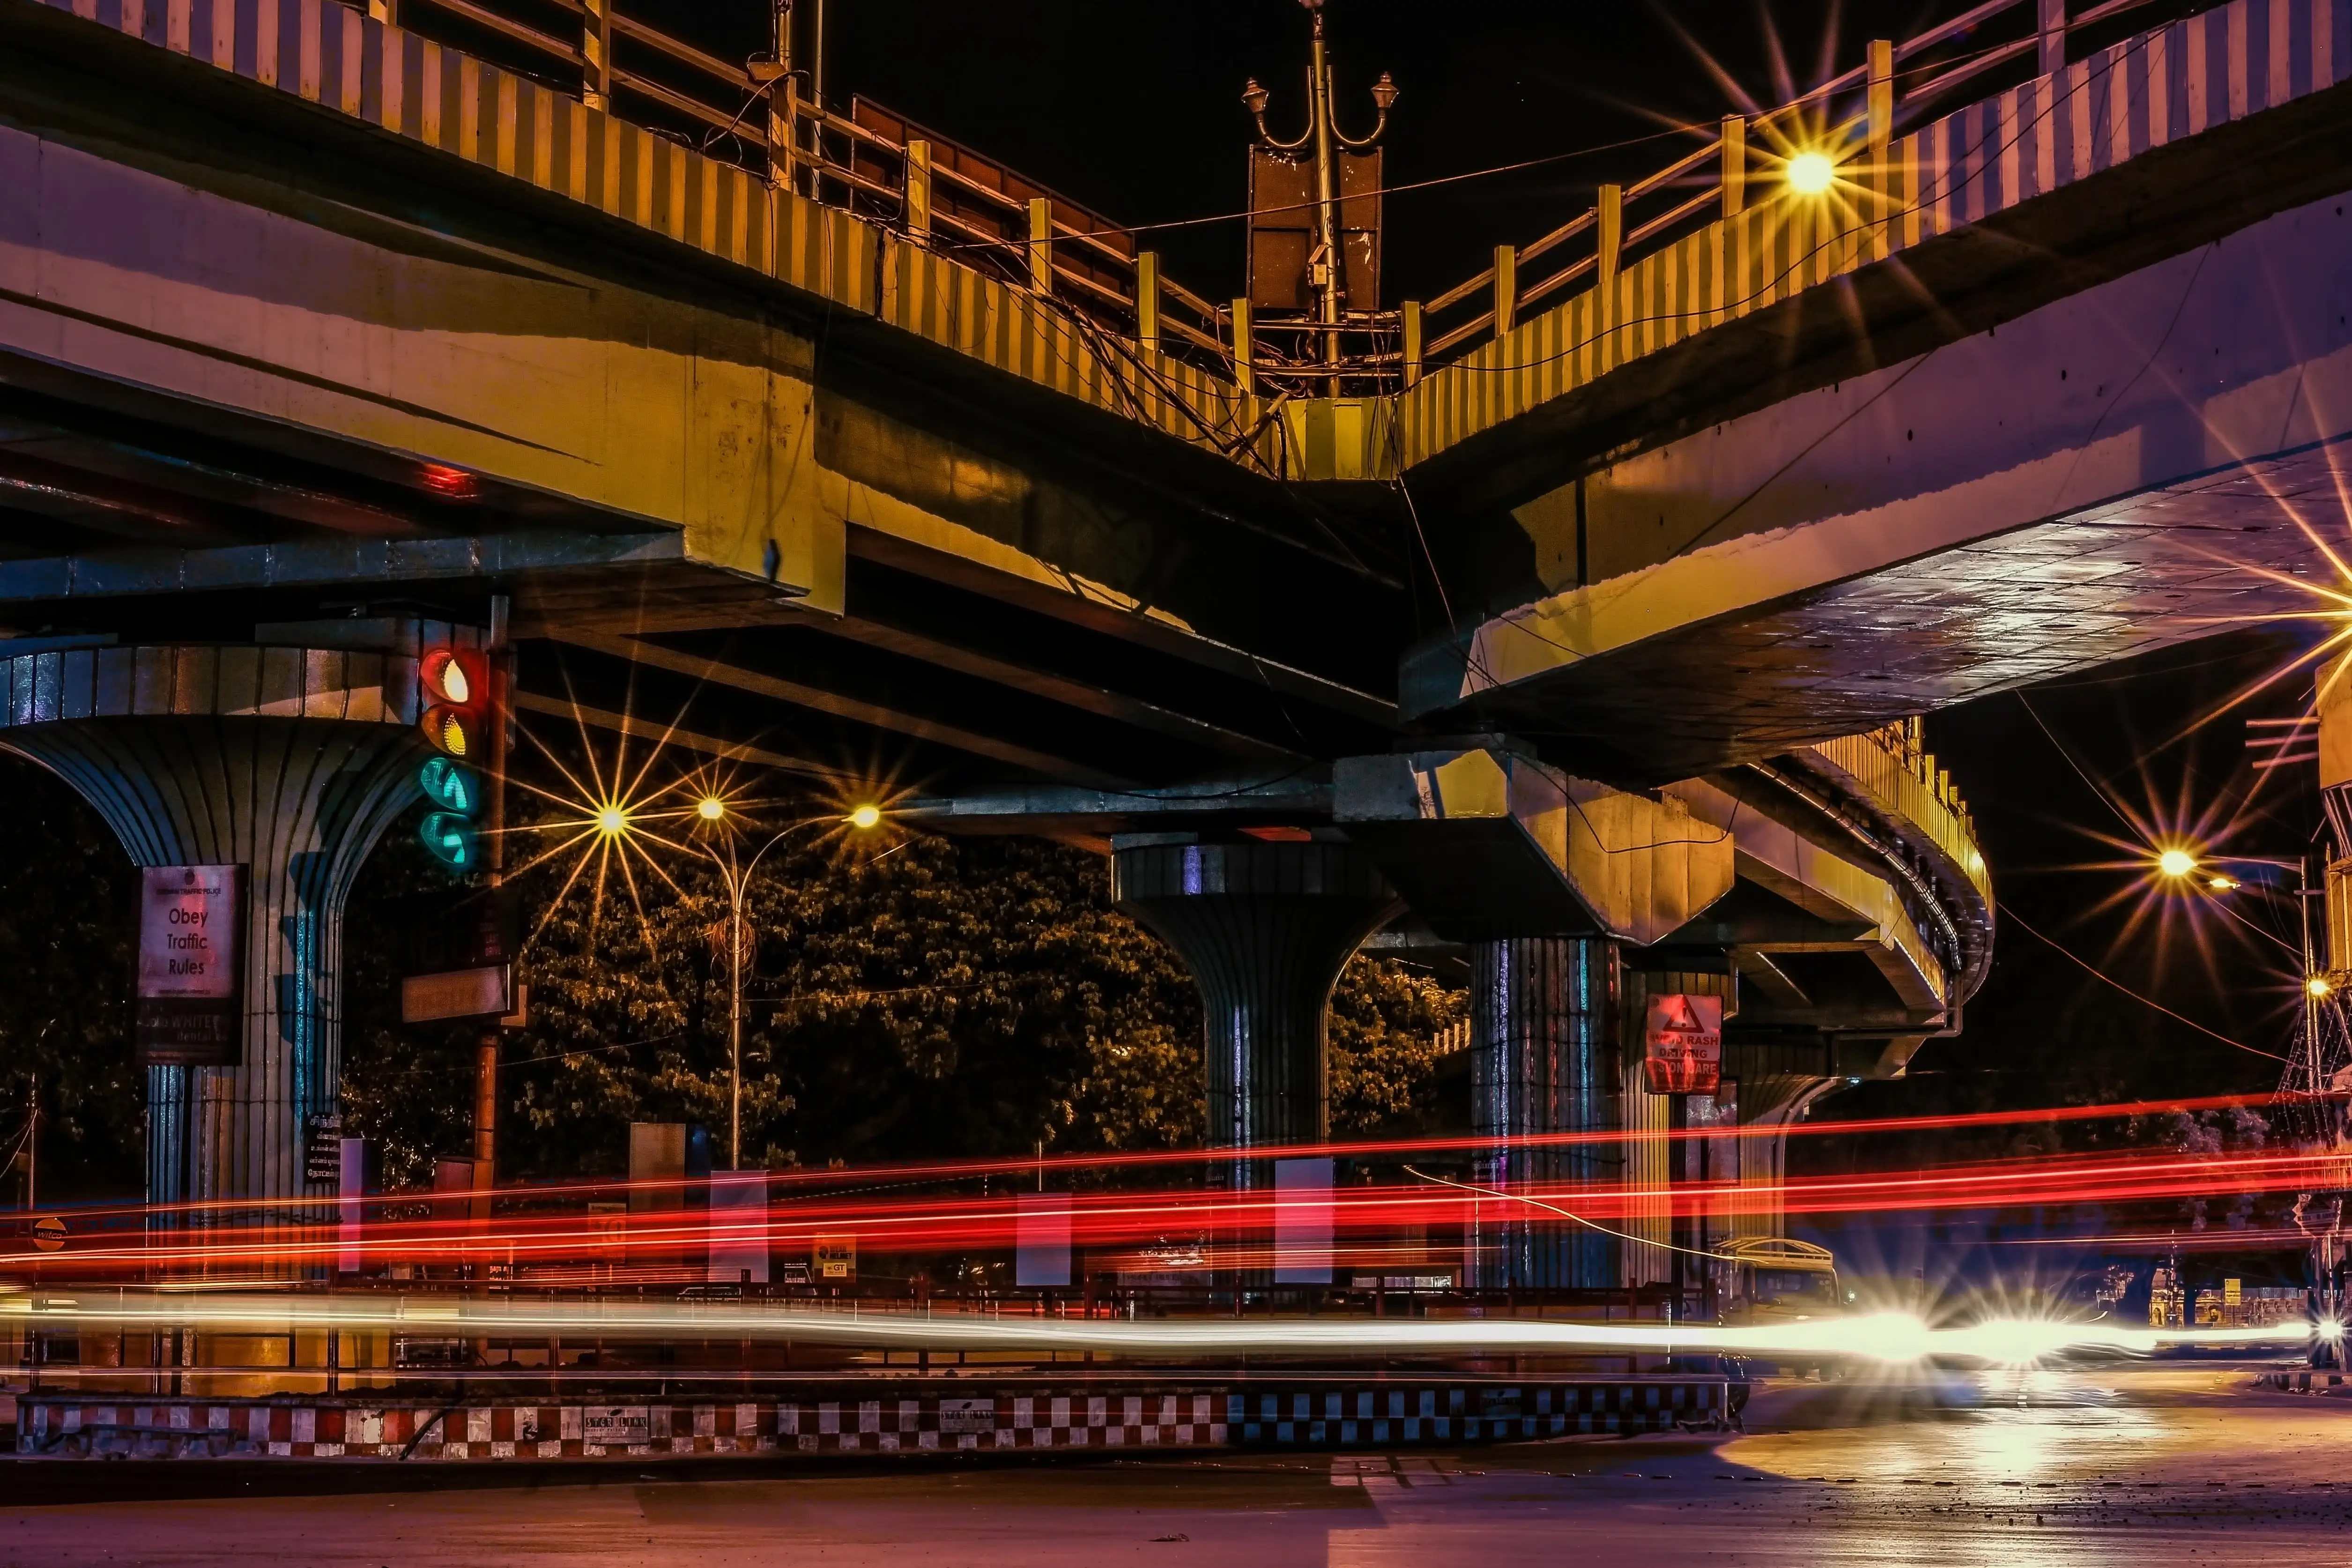 Traffic at night time